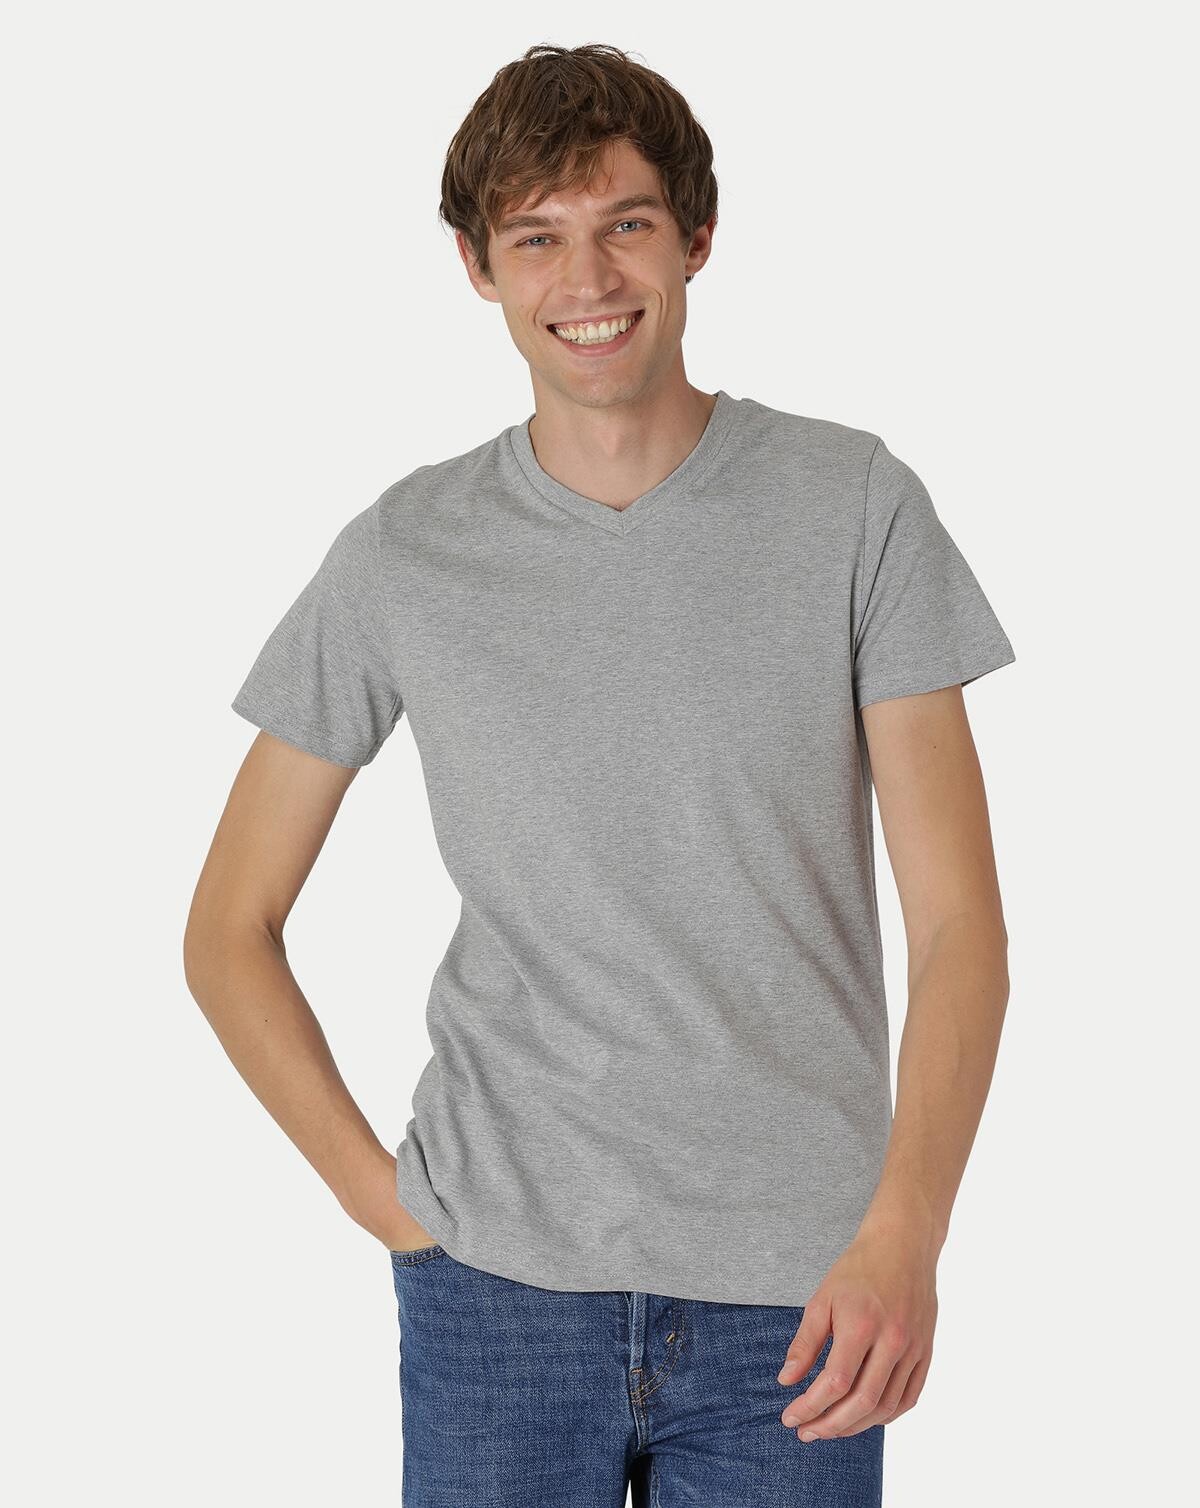 Billede af Neutral Organic - Mens Fitted V-neck T-shirt (Grå Meleret, XL) hos Army Star